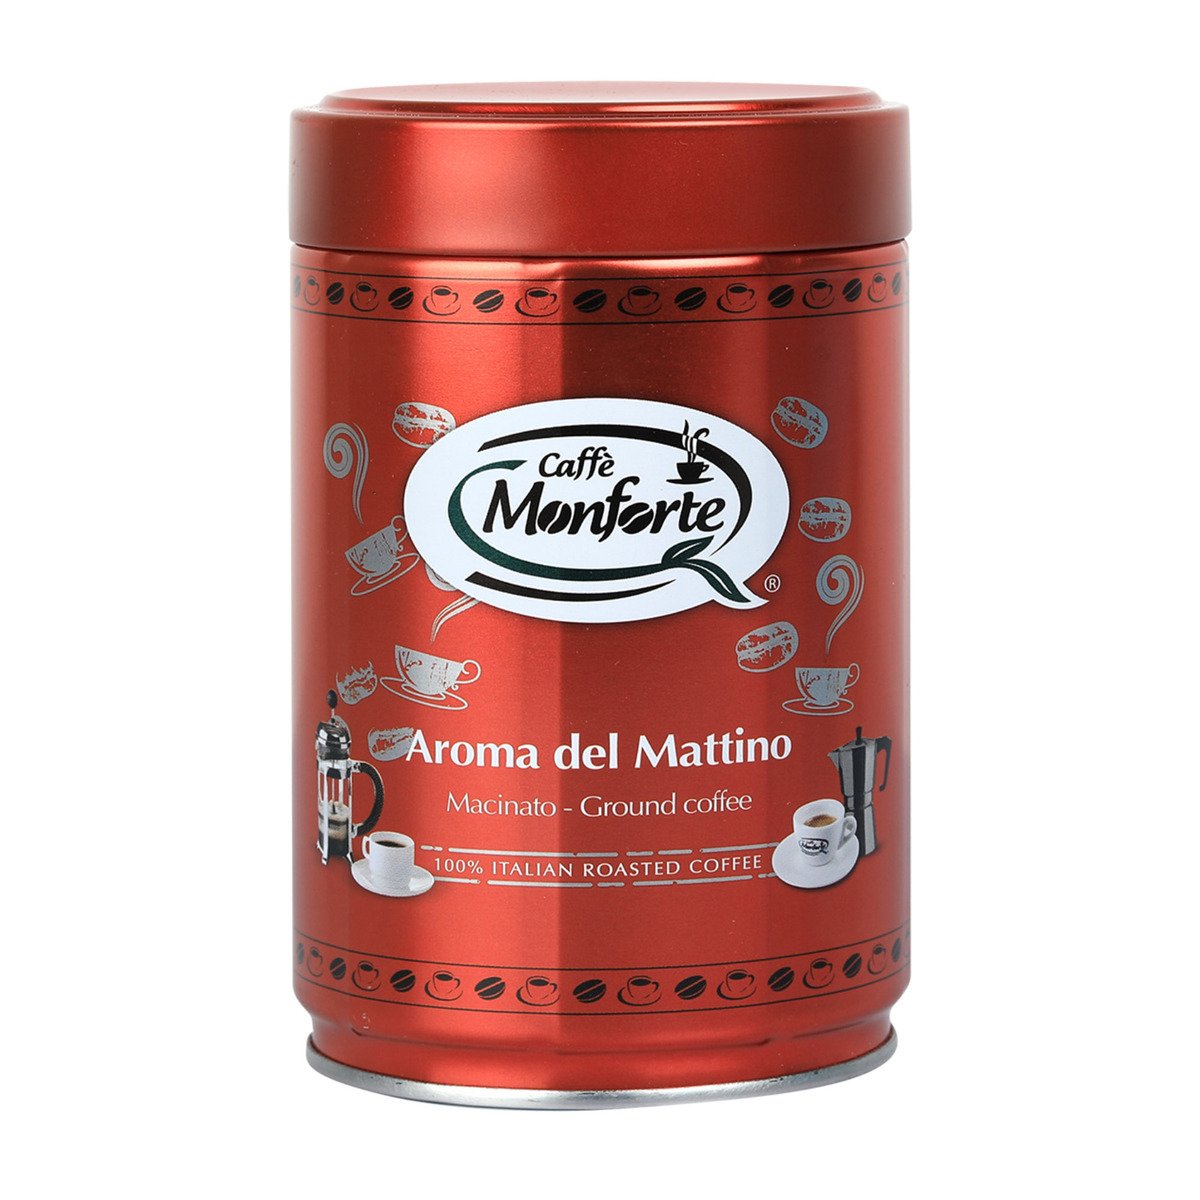 Monforte Aroma Del Mattino Ground Coffee 250g